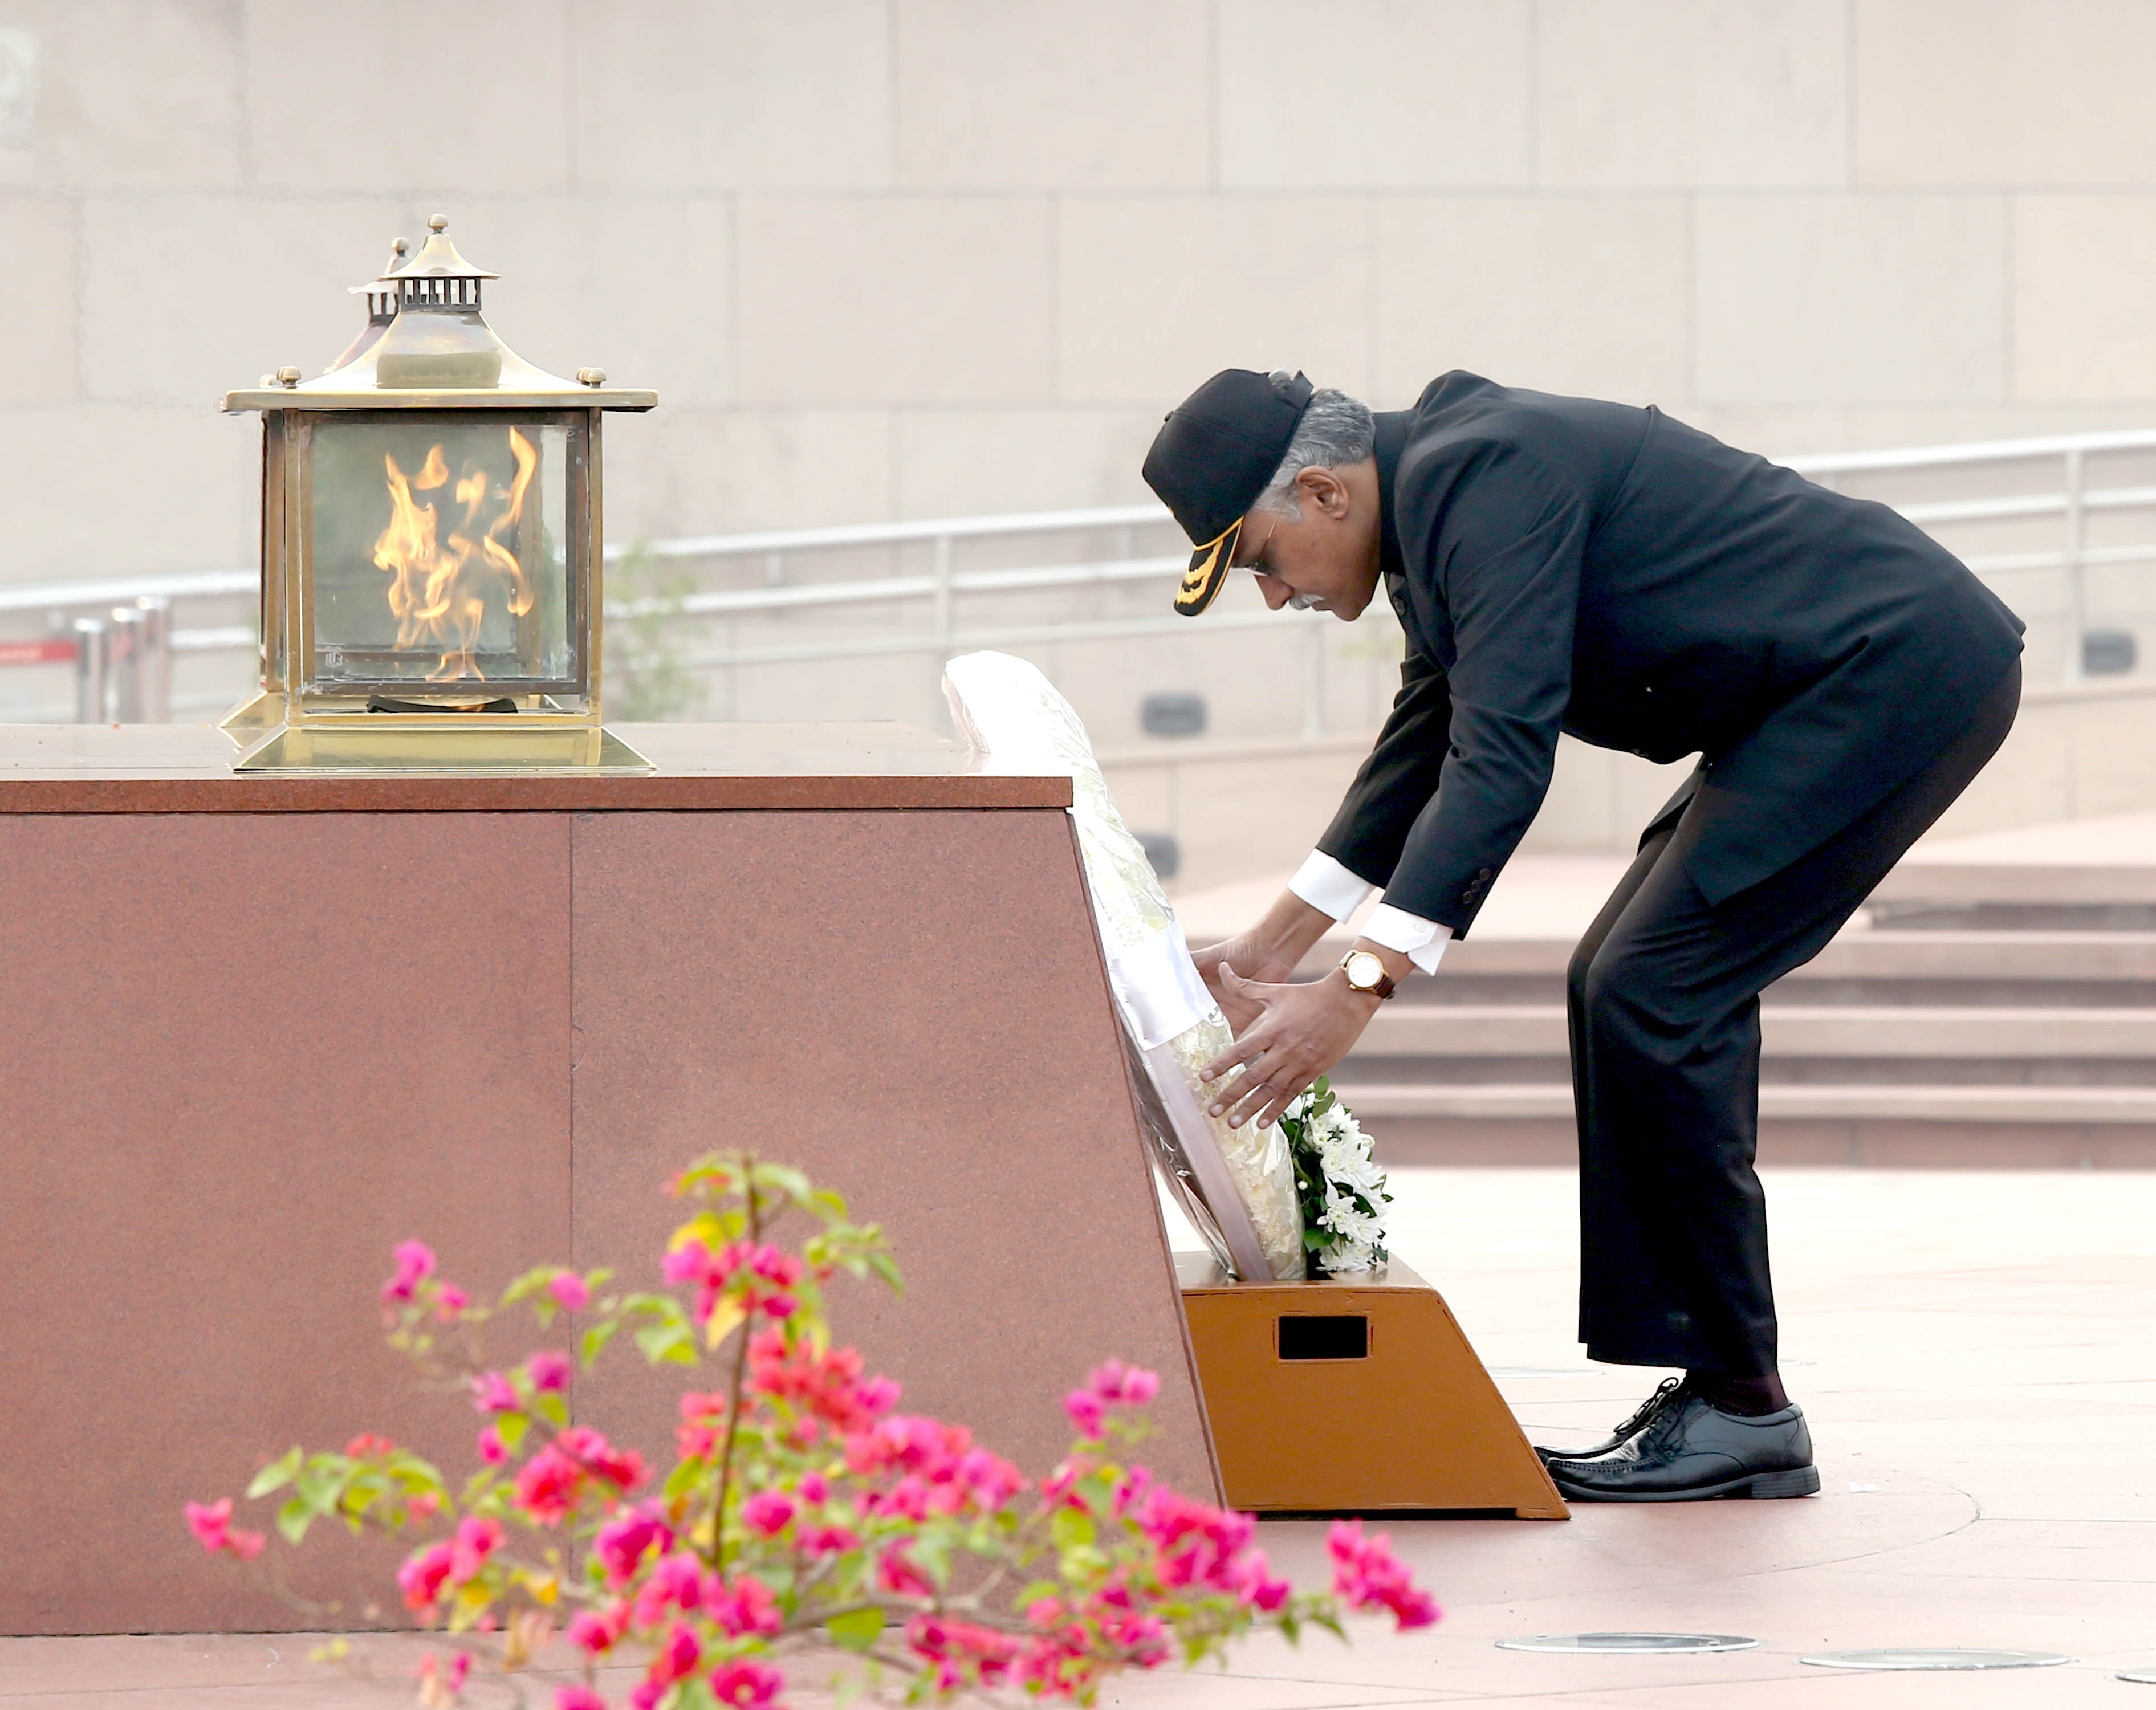 श्री गिरिधर अरमने 01 नवंबर 2022 को रक्षा सचिव का पदभार संभालने से पहले नई दिल्ली में राष्ट्रीय समर स्मारक पर पुष्पांजलि अर्पित करते हुए।